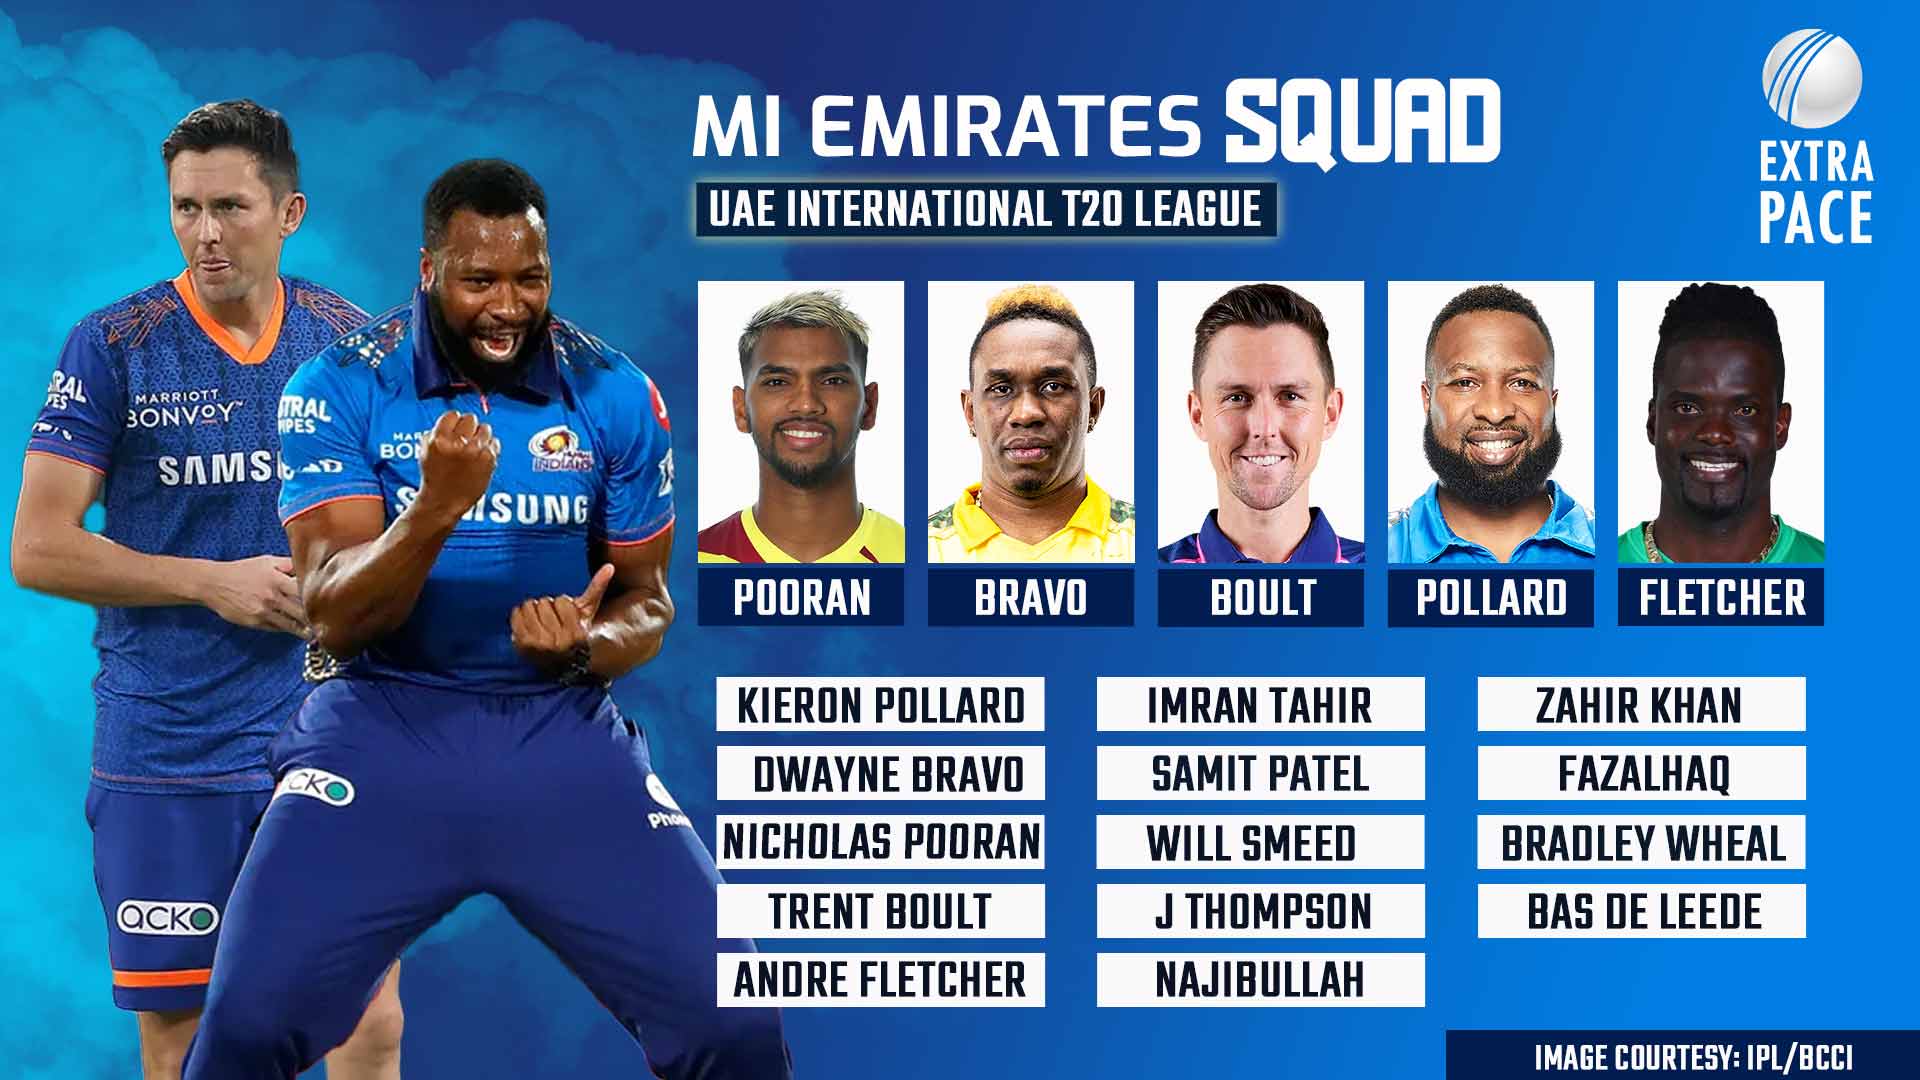 Pollard, Bravo, Boult, Pooran to feature in MI Emirates for UAE T20 League